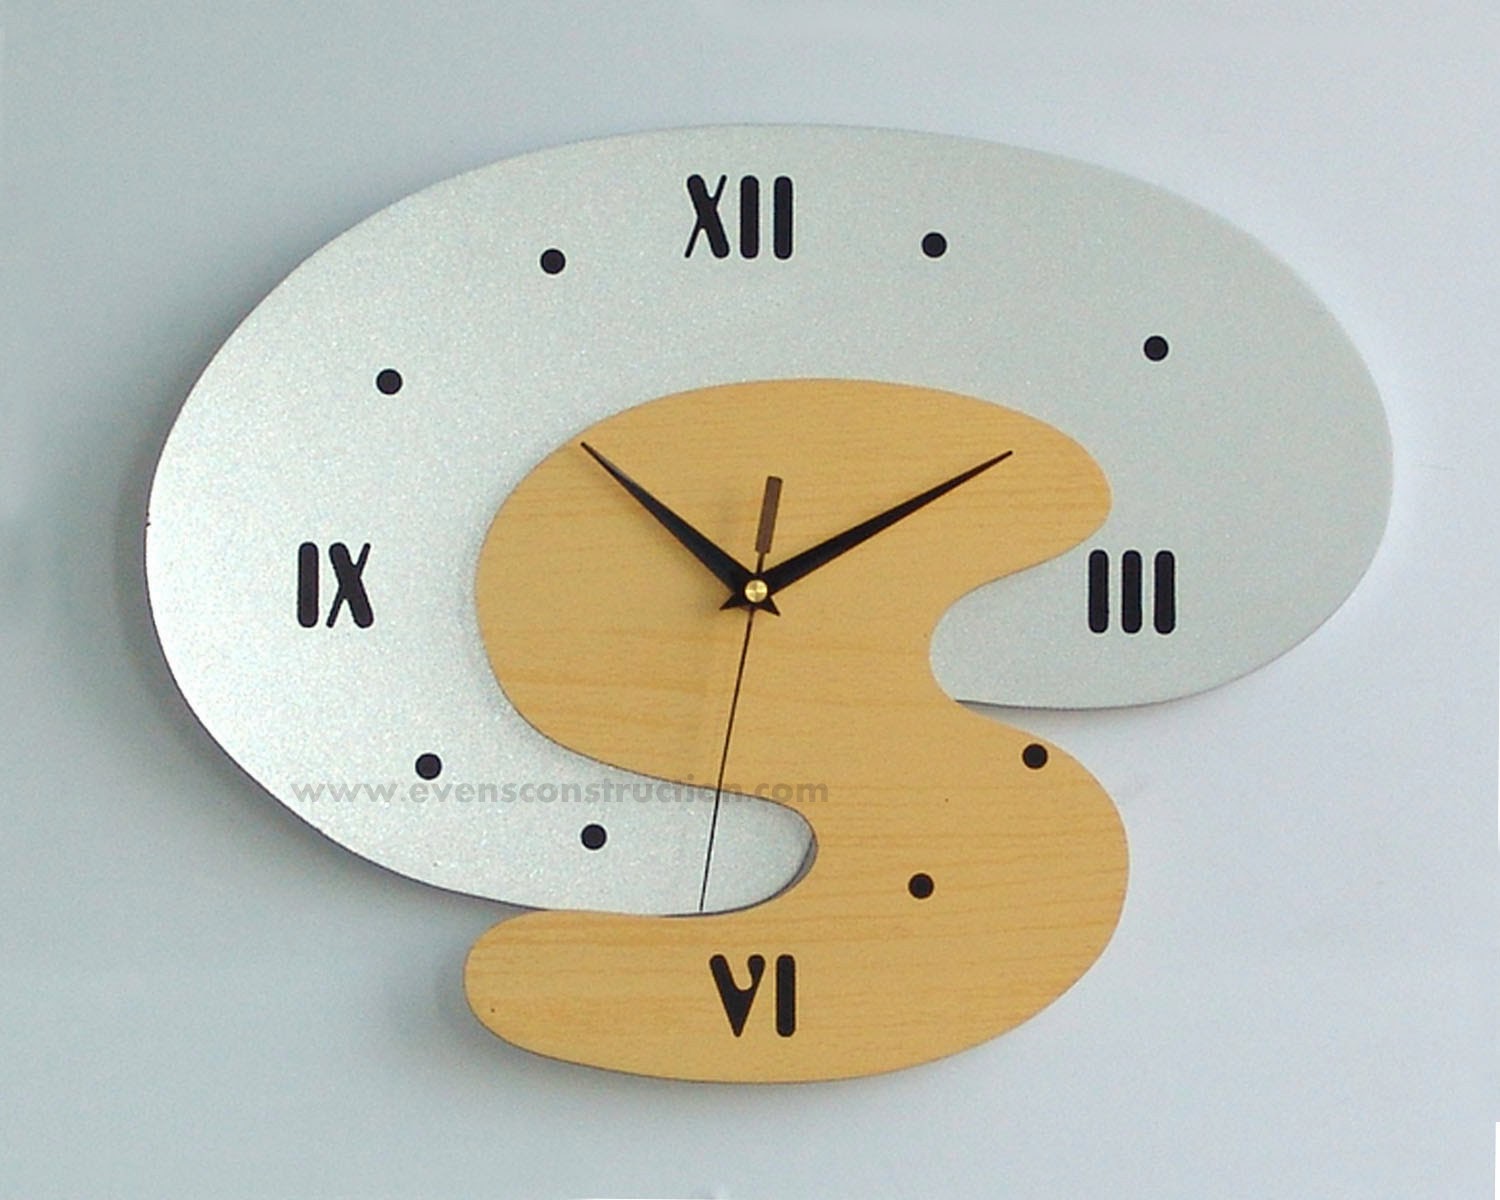 Модели часов настенных. Часы настенные. Часы на стену. Креативные часы. Дизайнерские часы.